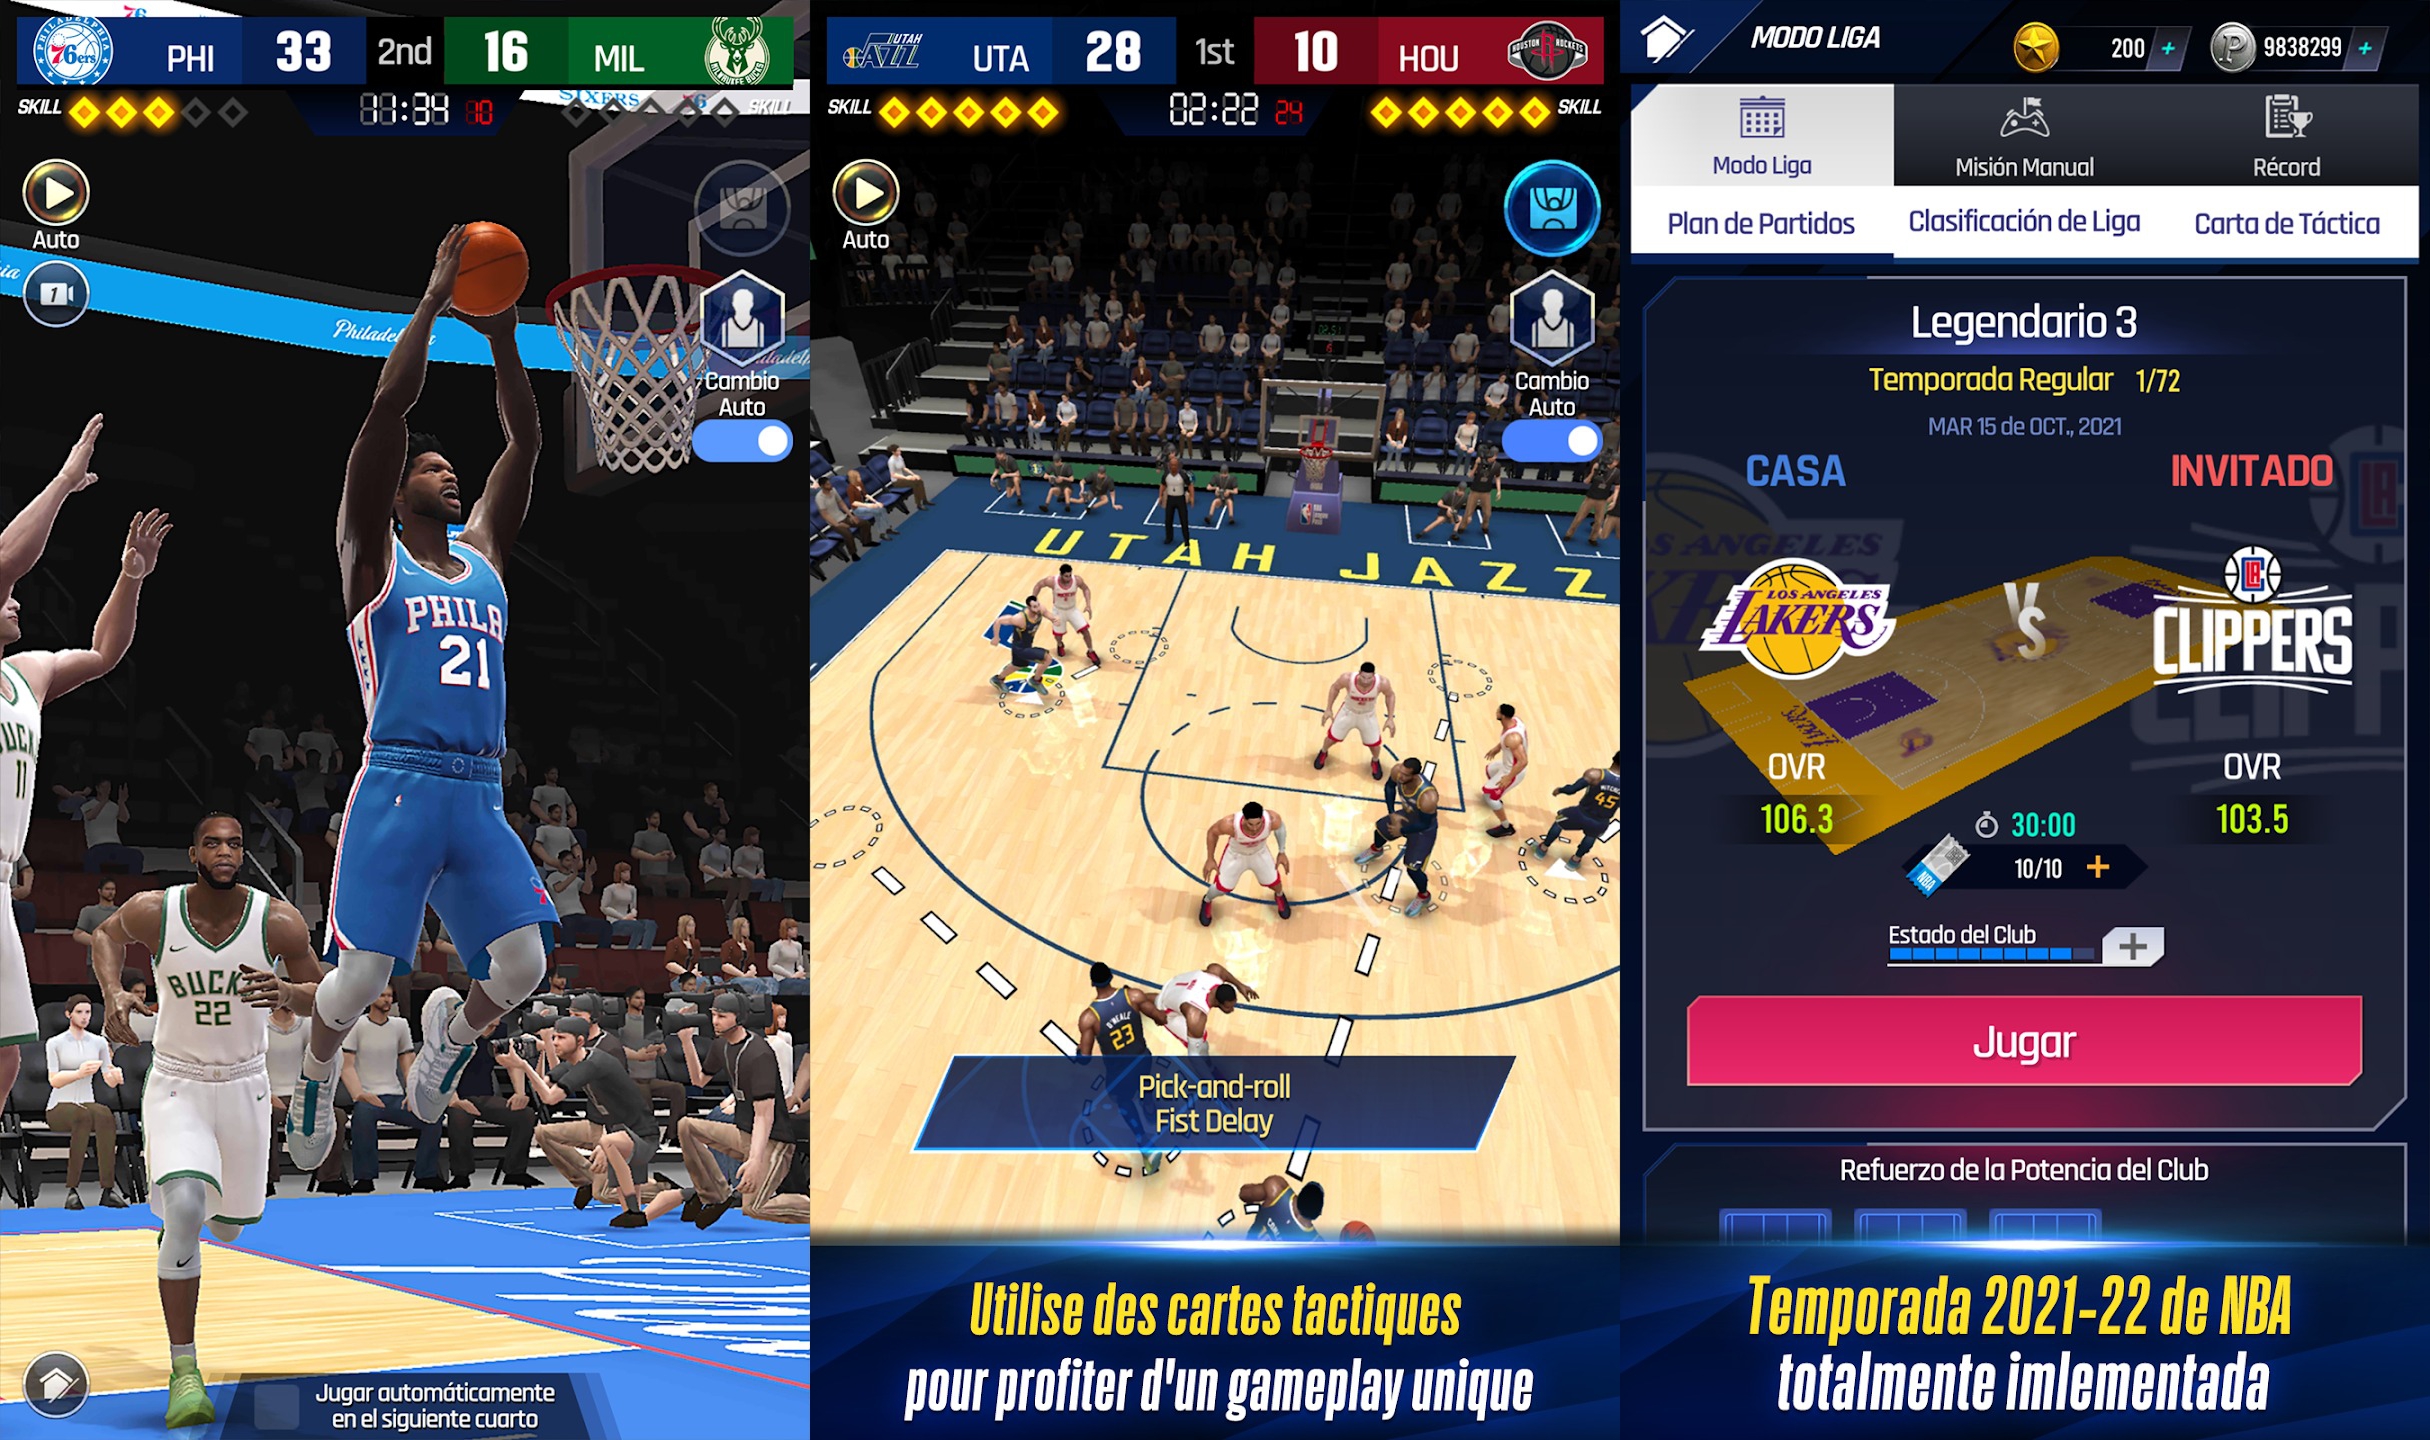 Duplicación Montón de Ernest Shackleton Los 7 mejores juegos de baloncesto que tienes que probar en tu móvil  Android | Computer Hoy